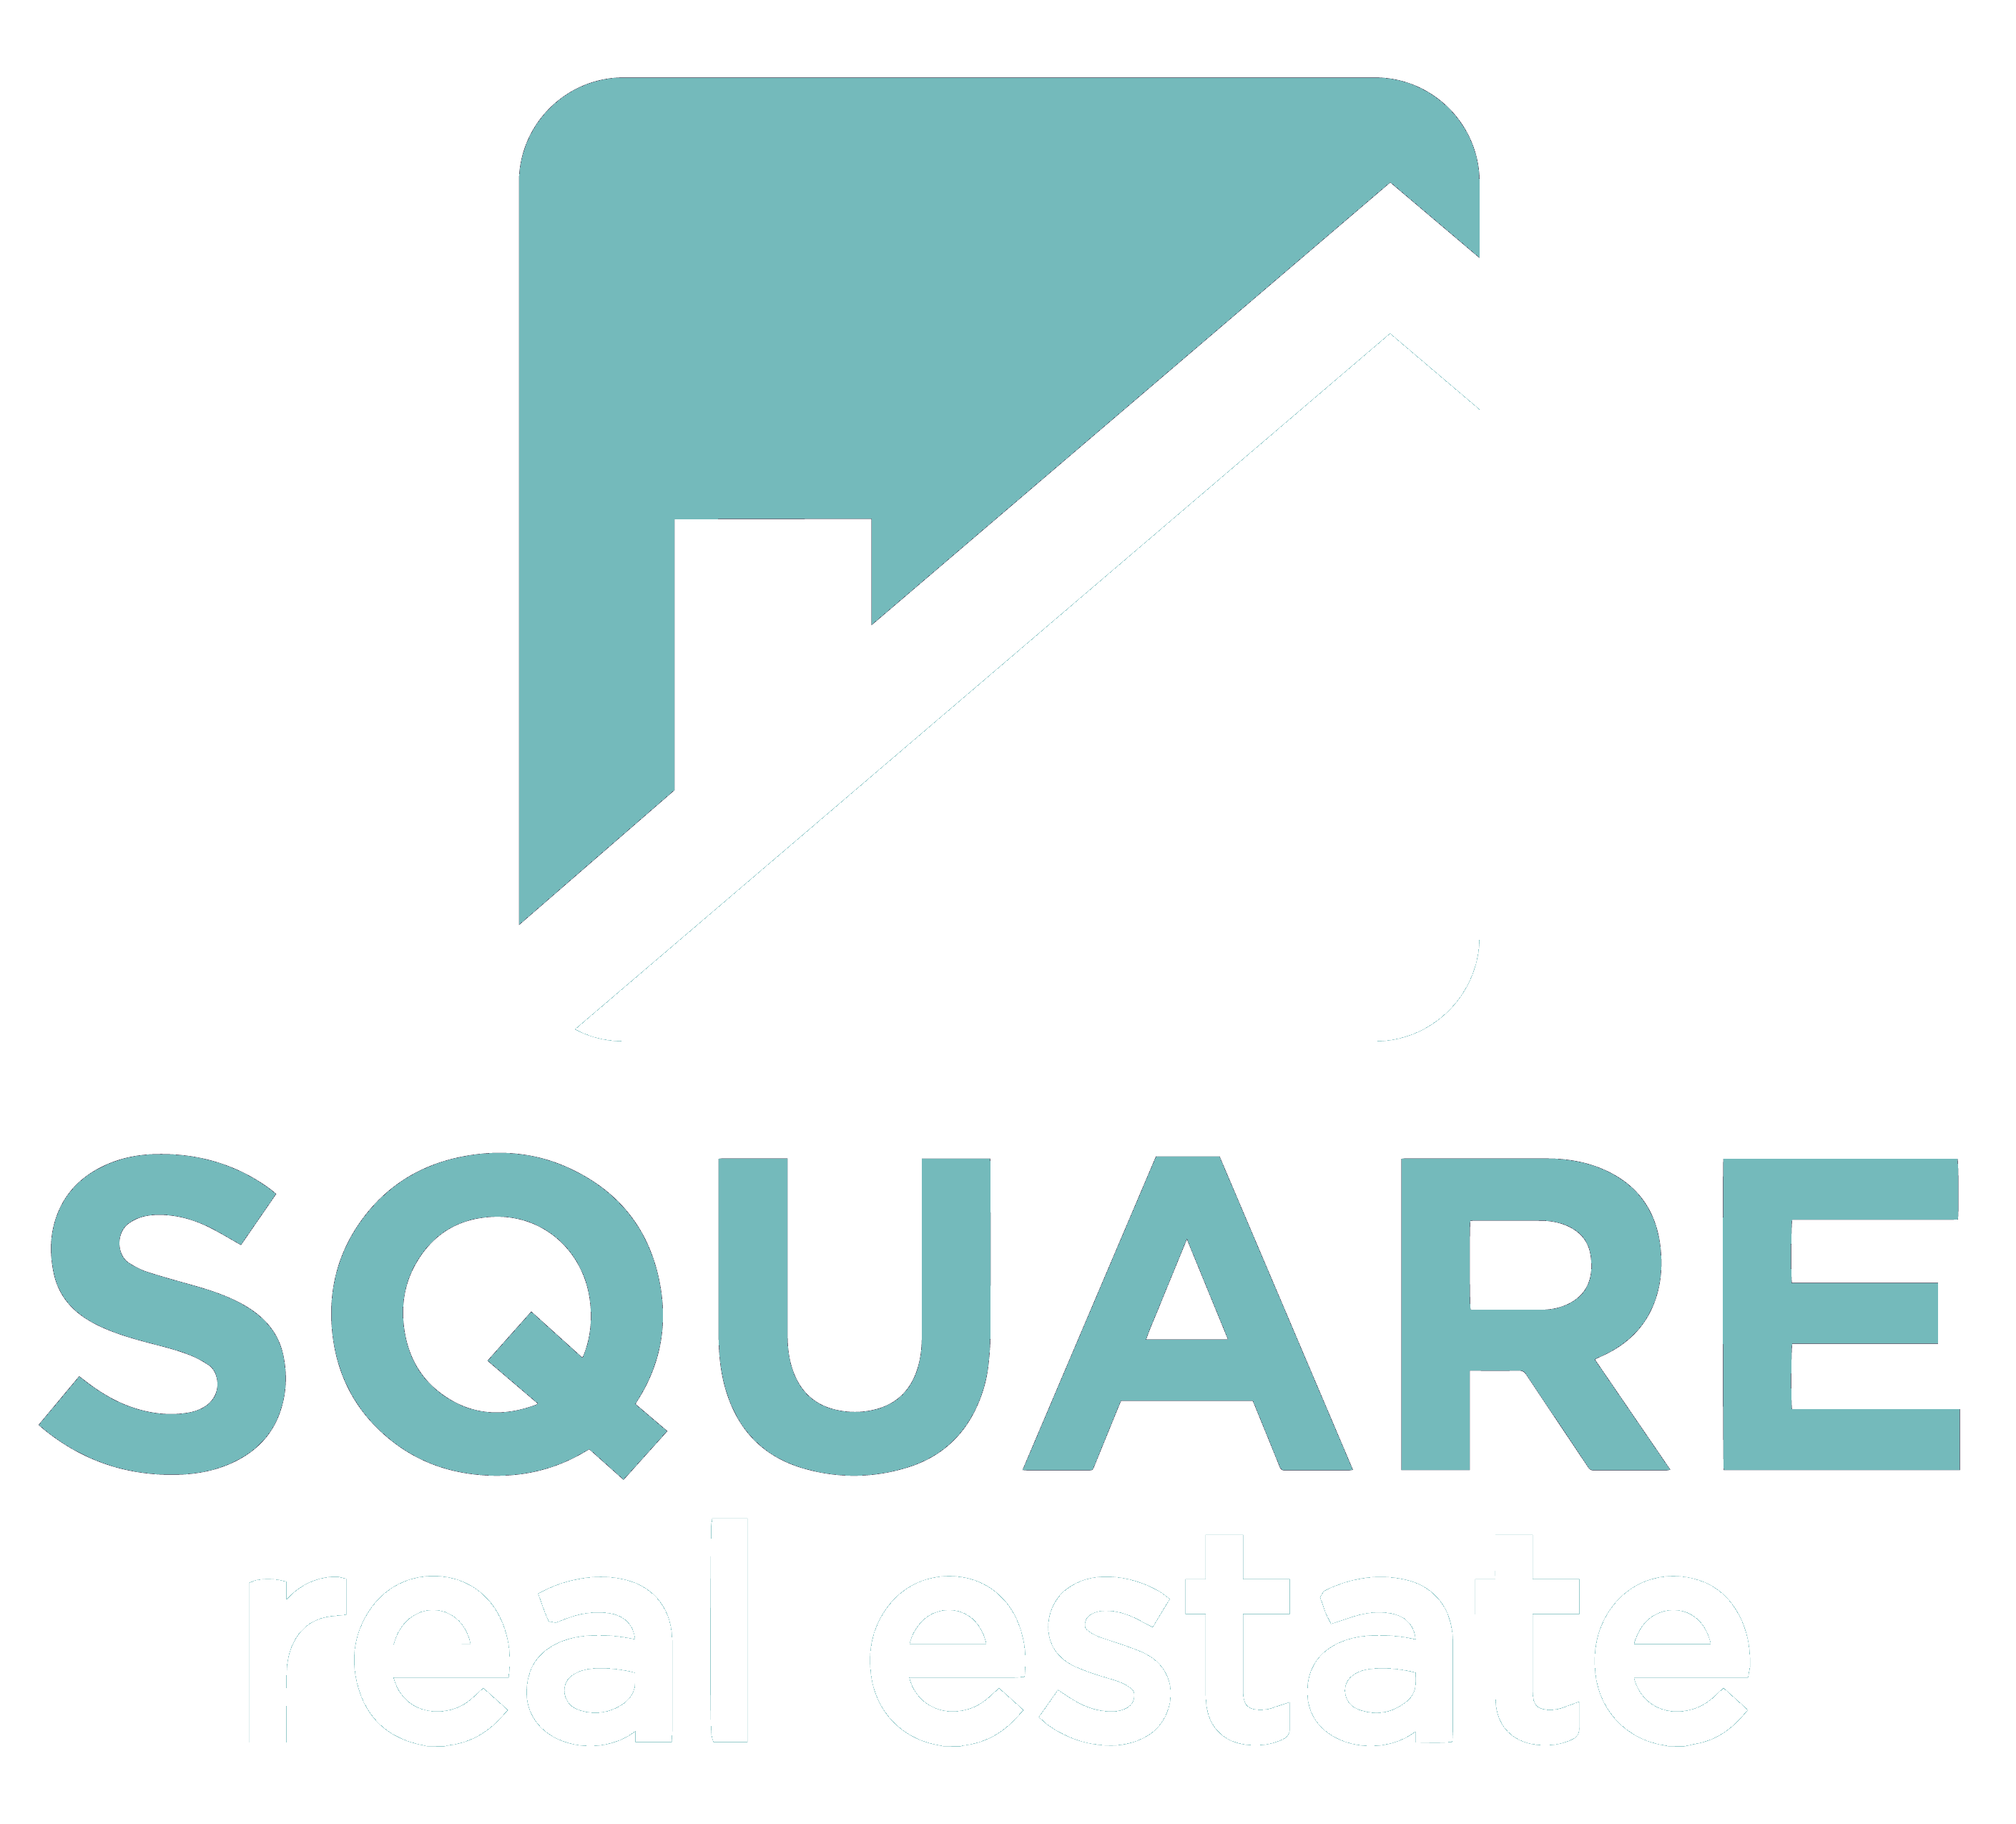 Square Real Estate